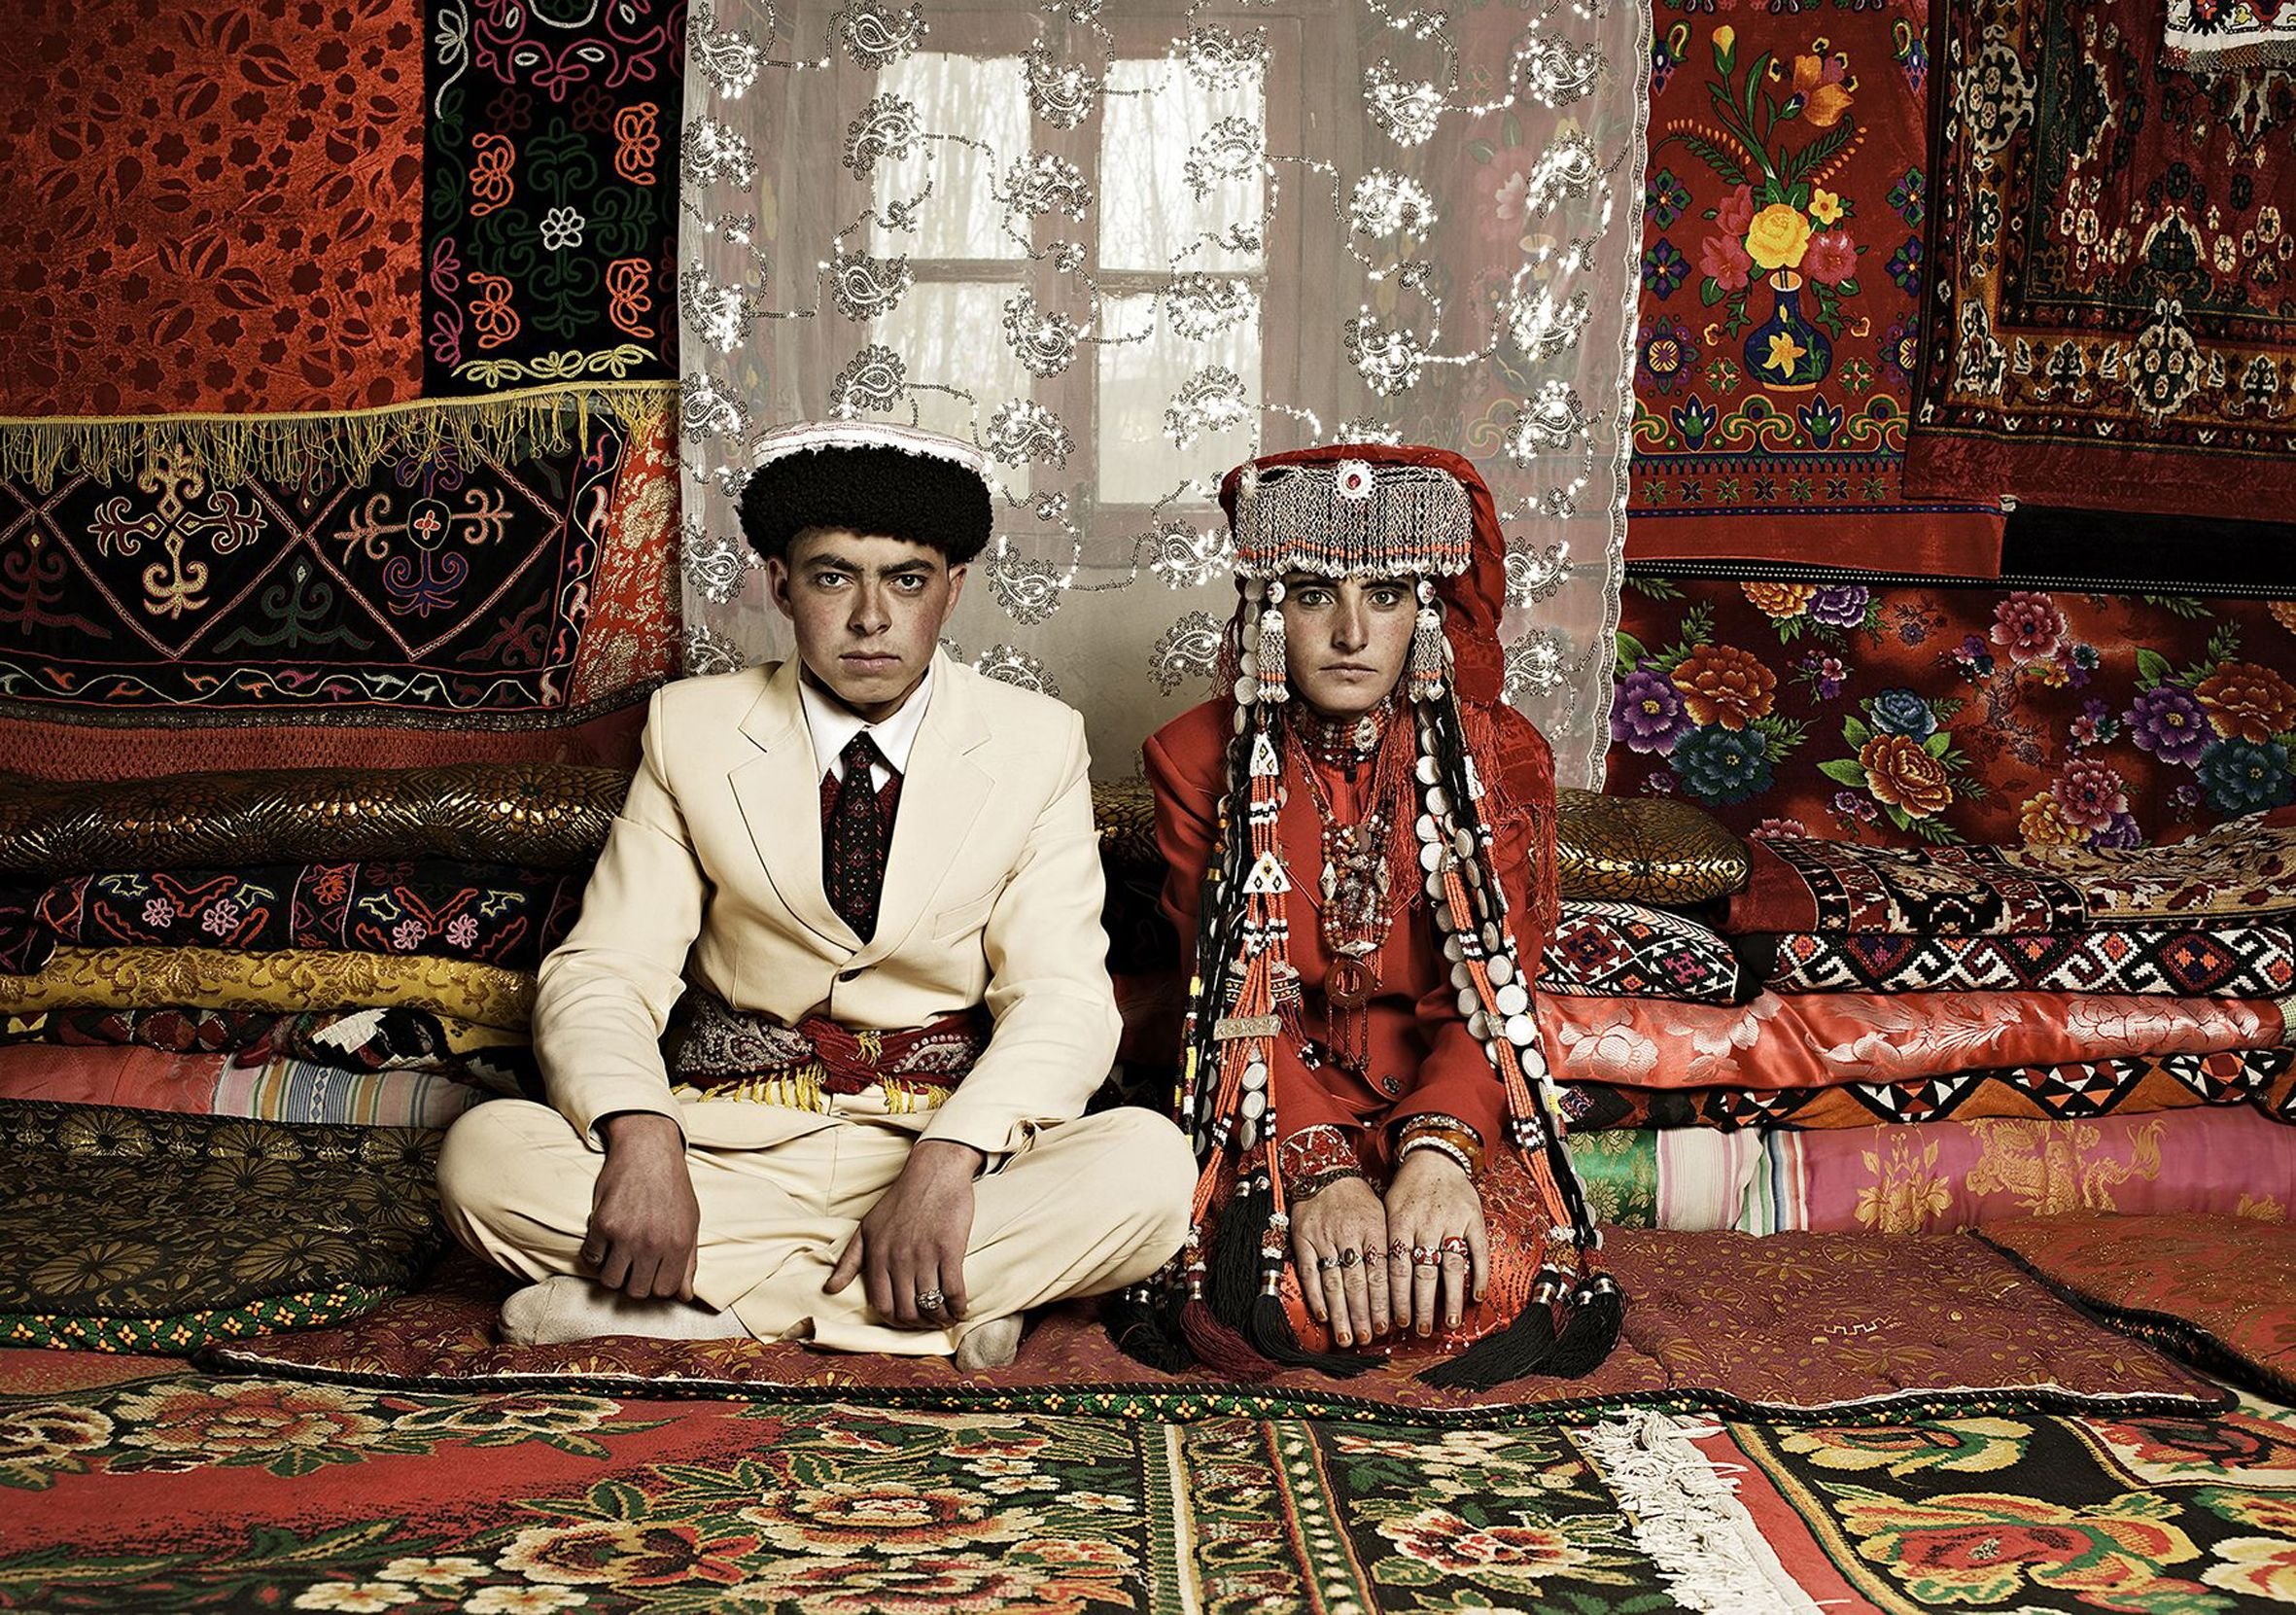 Что обозначает таджикский. Таджикистан Памирцы народность. Традиции памирцев Таджикистане. Ваханцы Памира. Таджикистан Памир и Памирцы.